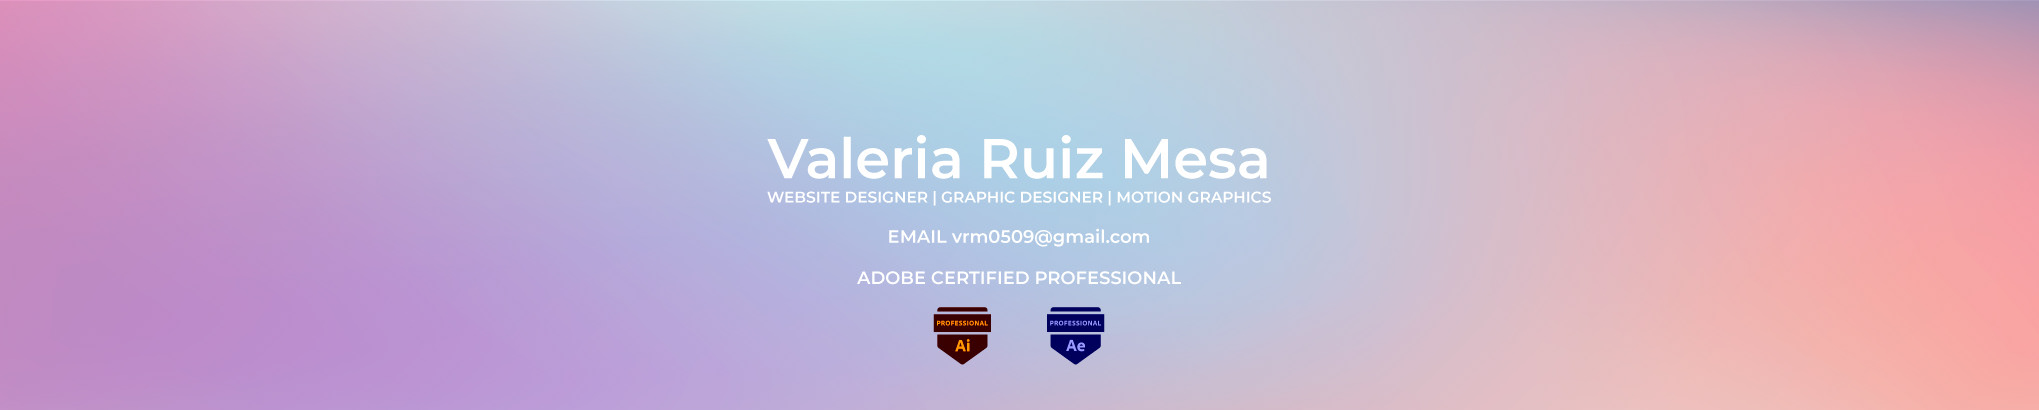 Banner de perfil de Valeria Ruiz Mesa